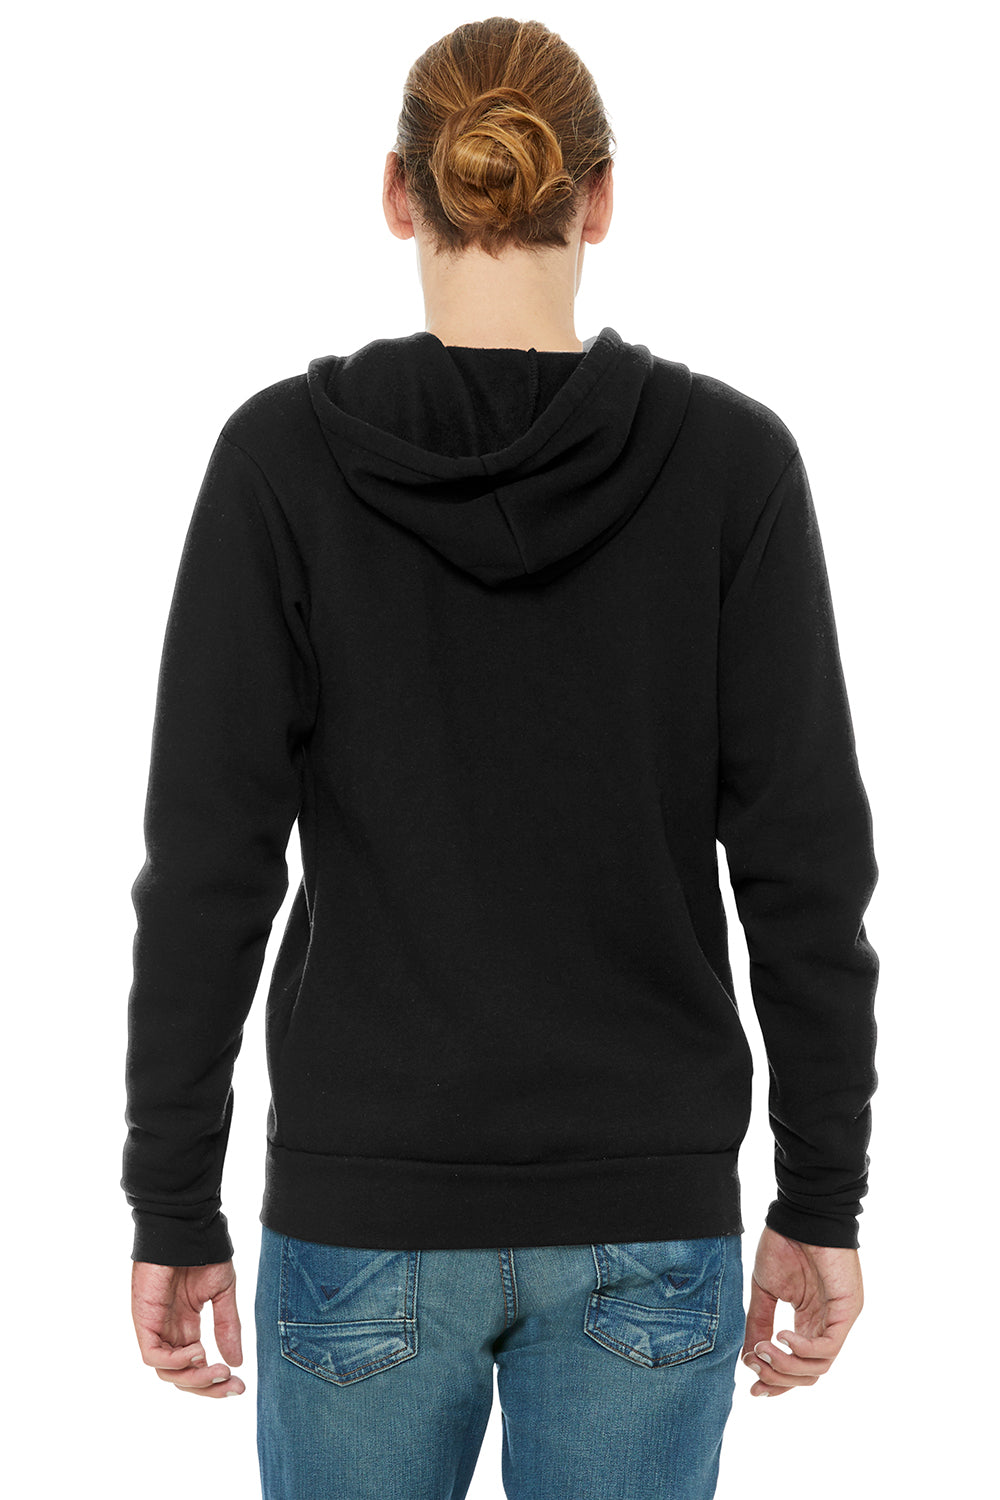 Bella + Canvas BC3909/3909 Mens Sponge Fleece Full Zip Hooded Sweatshirt Hoodie Solid Black Model Back